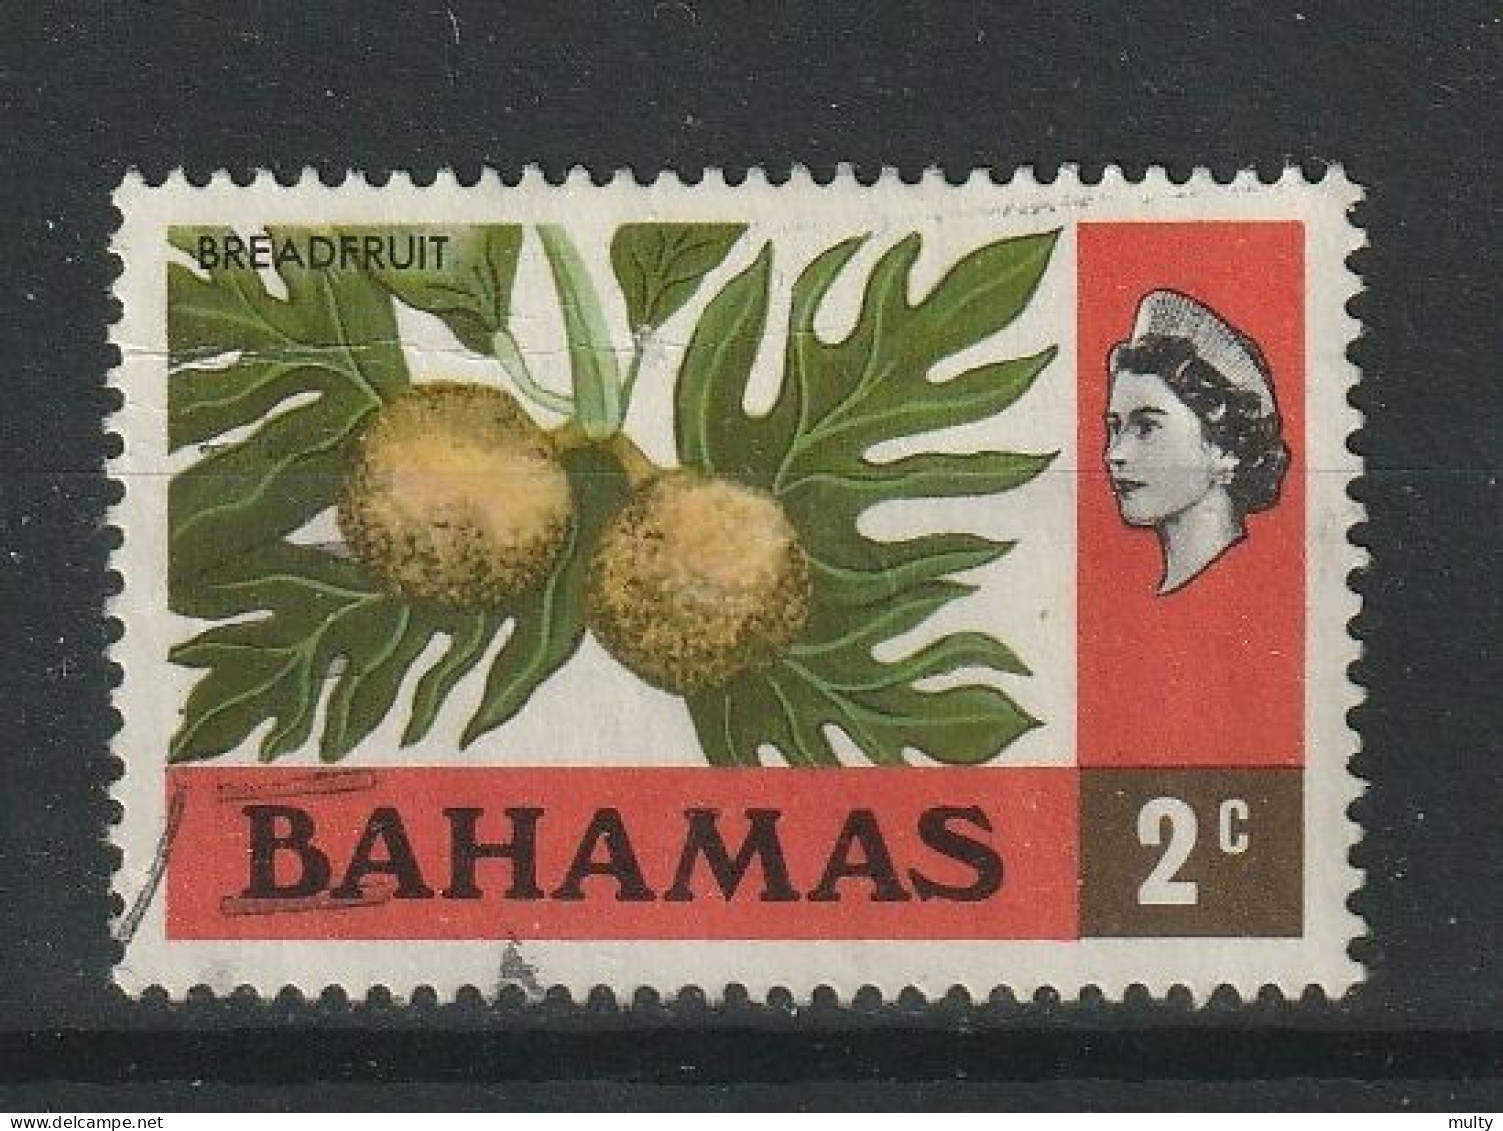 Bahamas Y/T 303 (0) - 1963-1973 Autonomía Interna